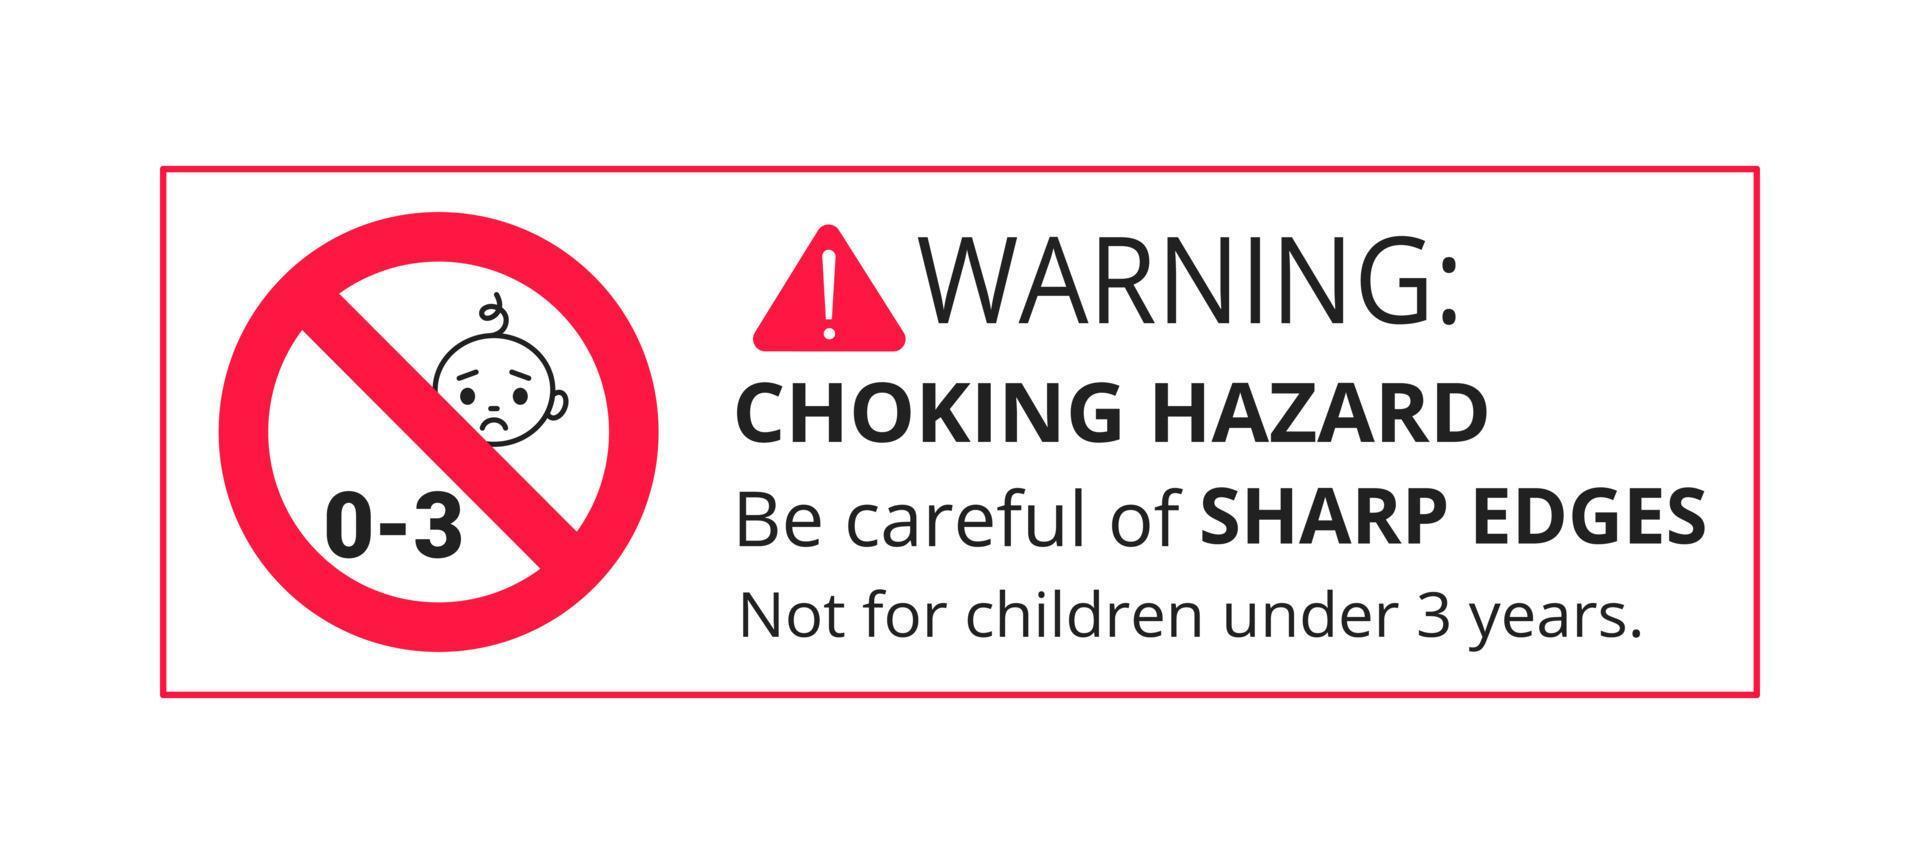 avertissement de danger d'étouffement autocollant de signe interdit ne convient pas aux enfants de moins de 3 ans vecteur